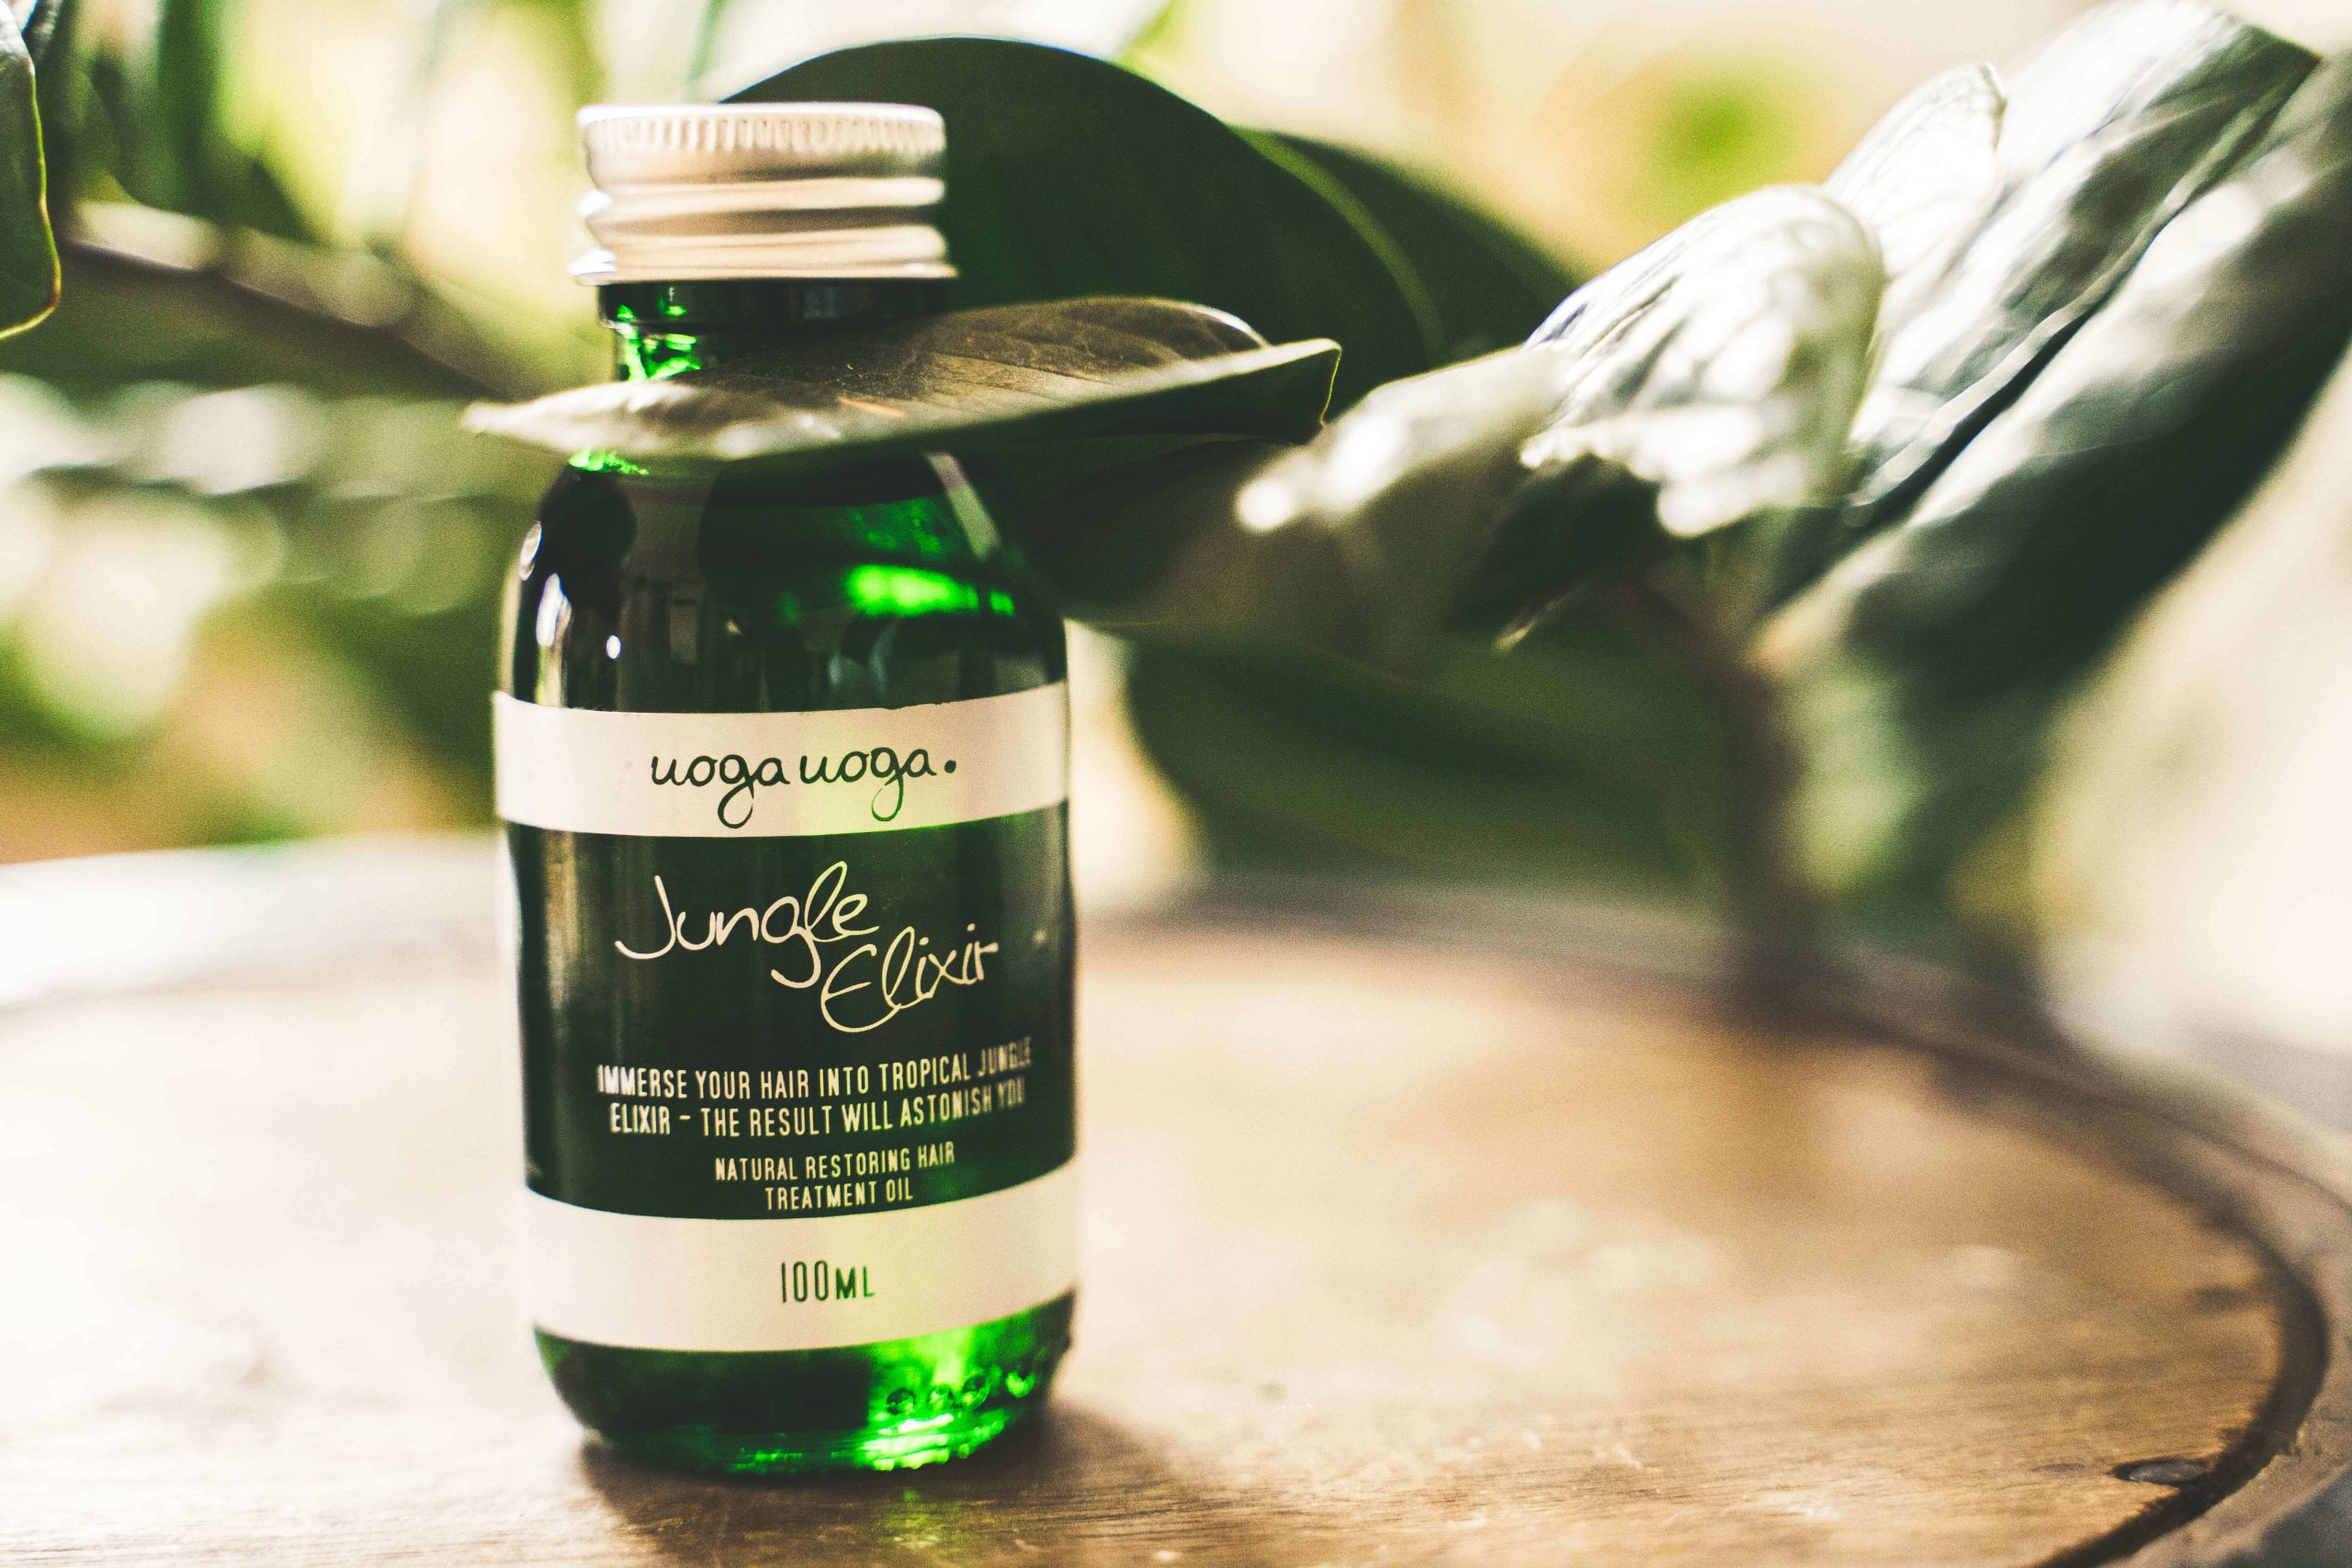 Drogeria internetowa poleca naturalny olejek do włosów od producenta Uoga Uoga. Przetestuj Jungle Elixir